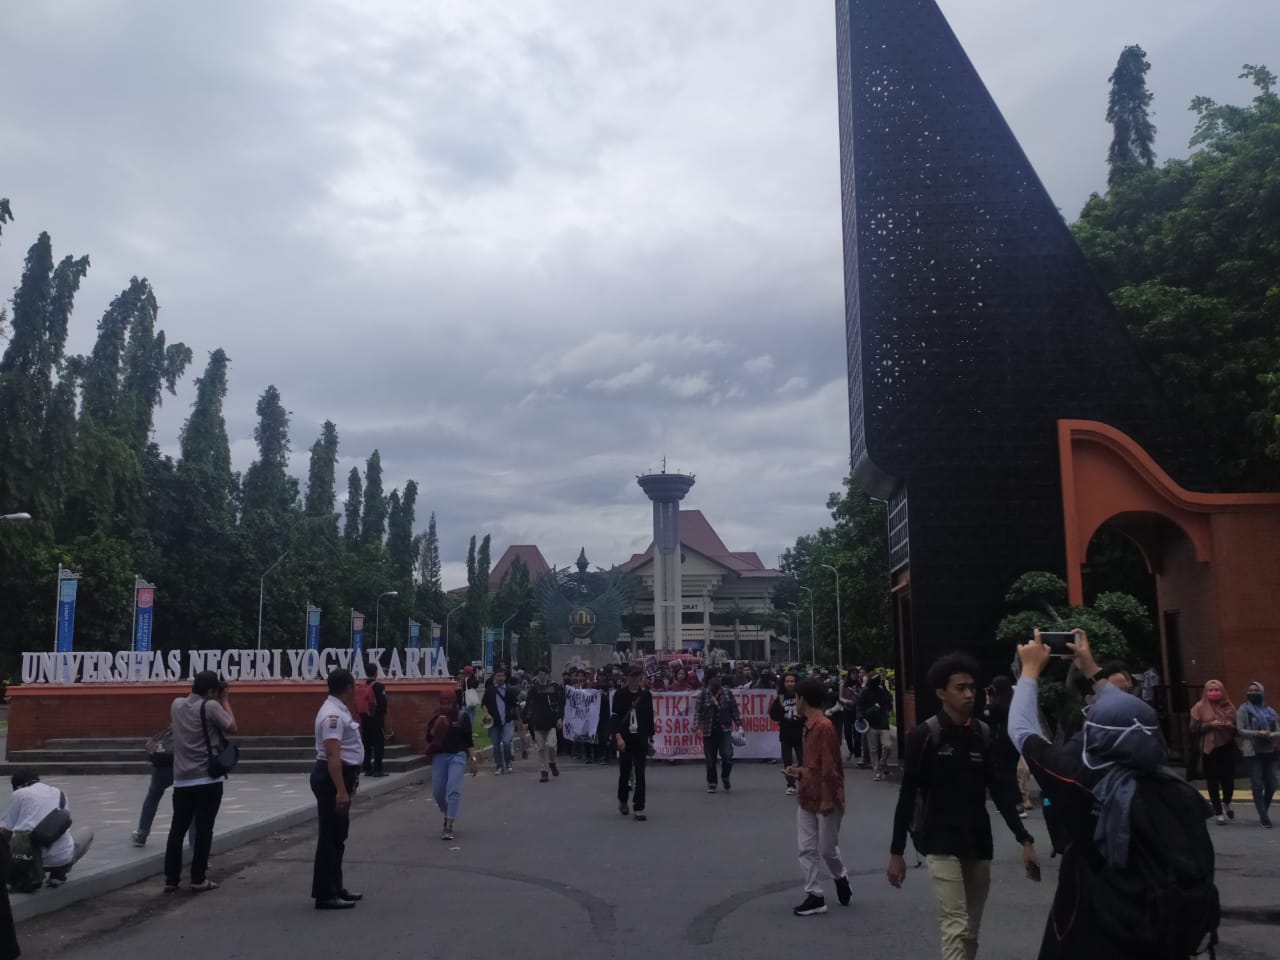 Massa yang tergabung dalam Aliansi Rakyat Bergerak (ARB) bakal menggelar demonstrasi menolak Omnibus Law Rancangan Undang-Undang Cipta Kerja. Aksi bertajuk #GejayanMemanggil ini digelar di Sleman, Yogyakarta, Senin (9/3).